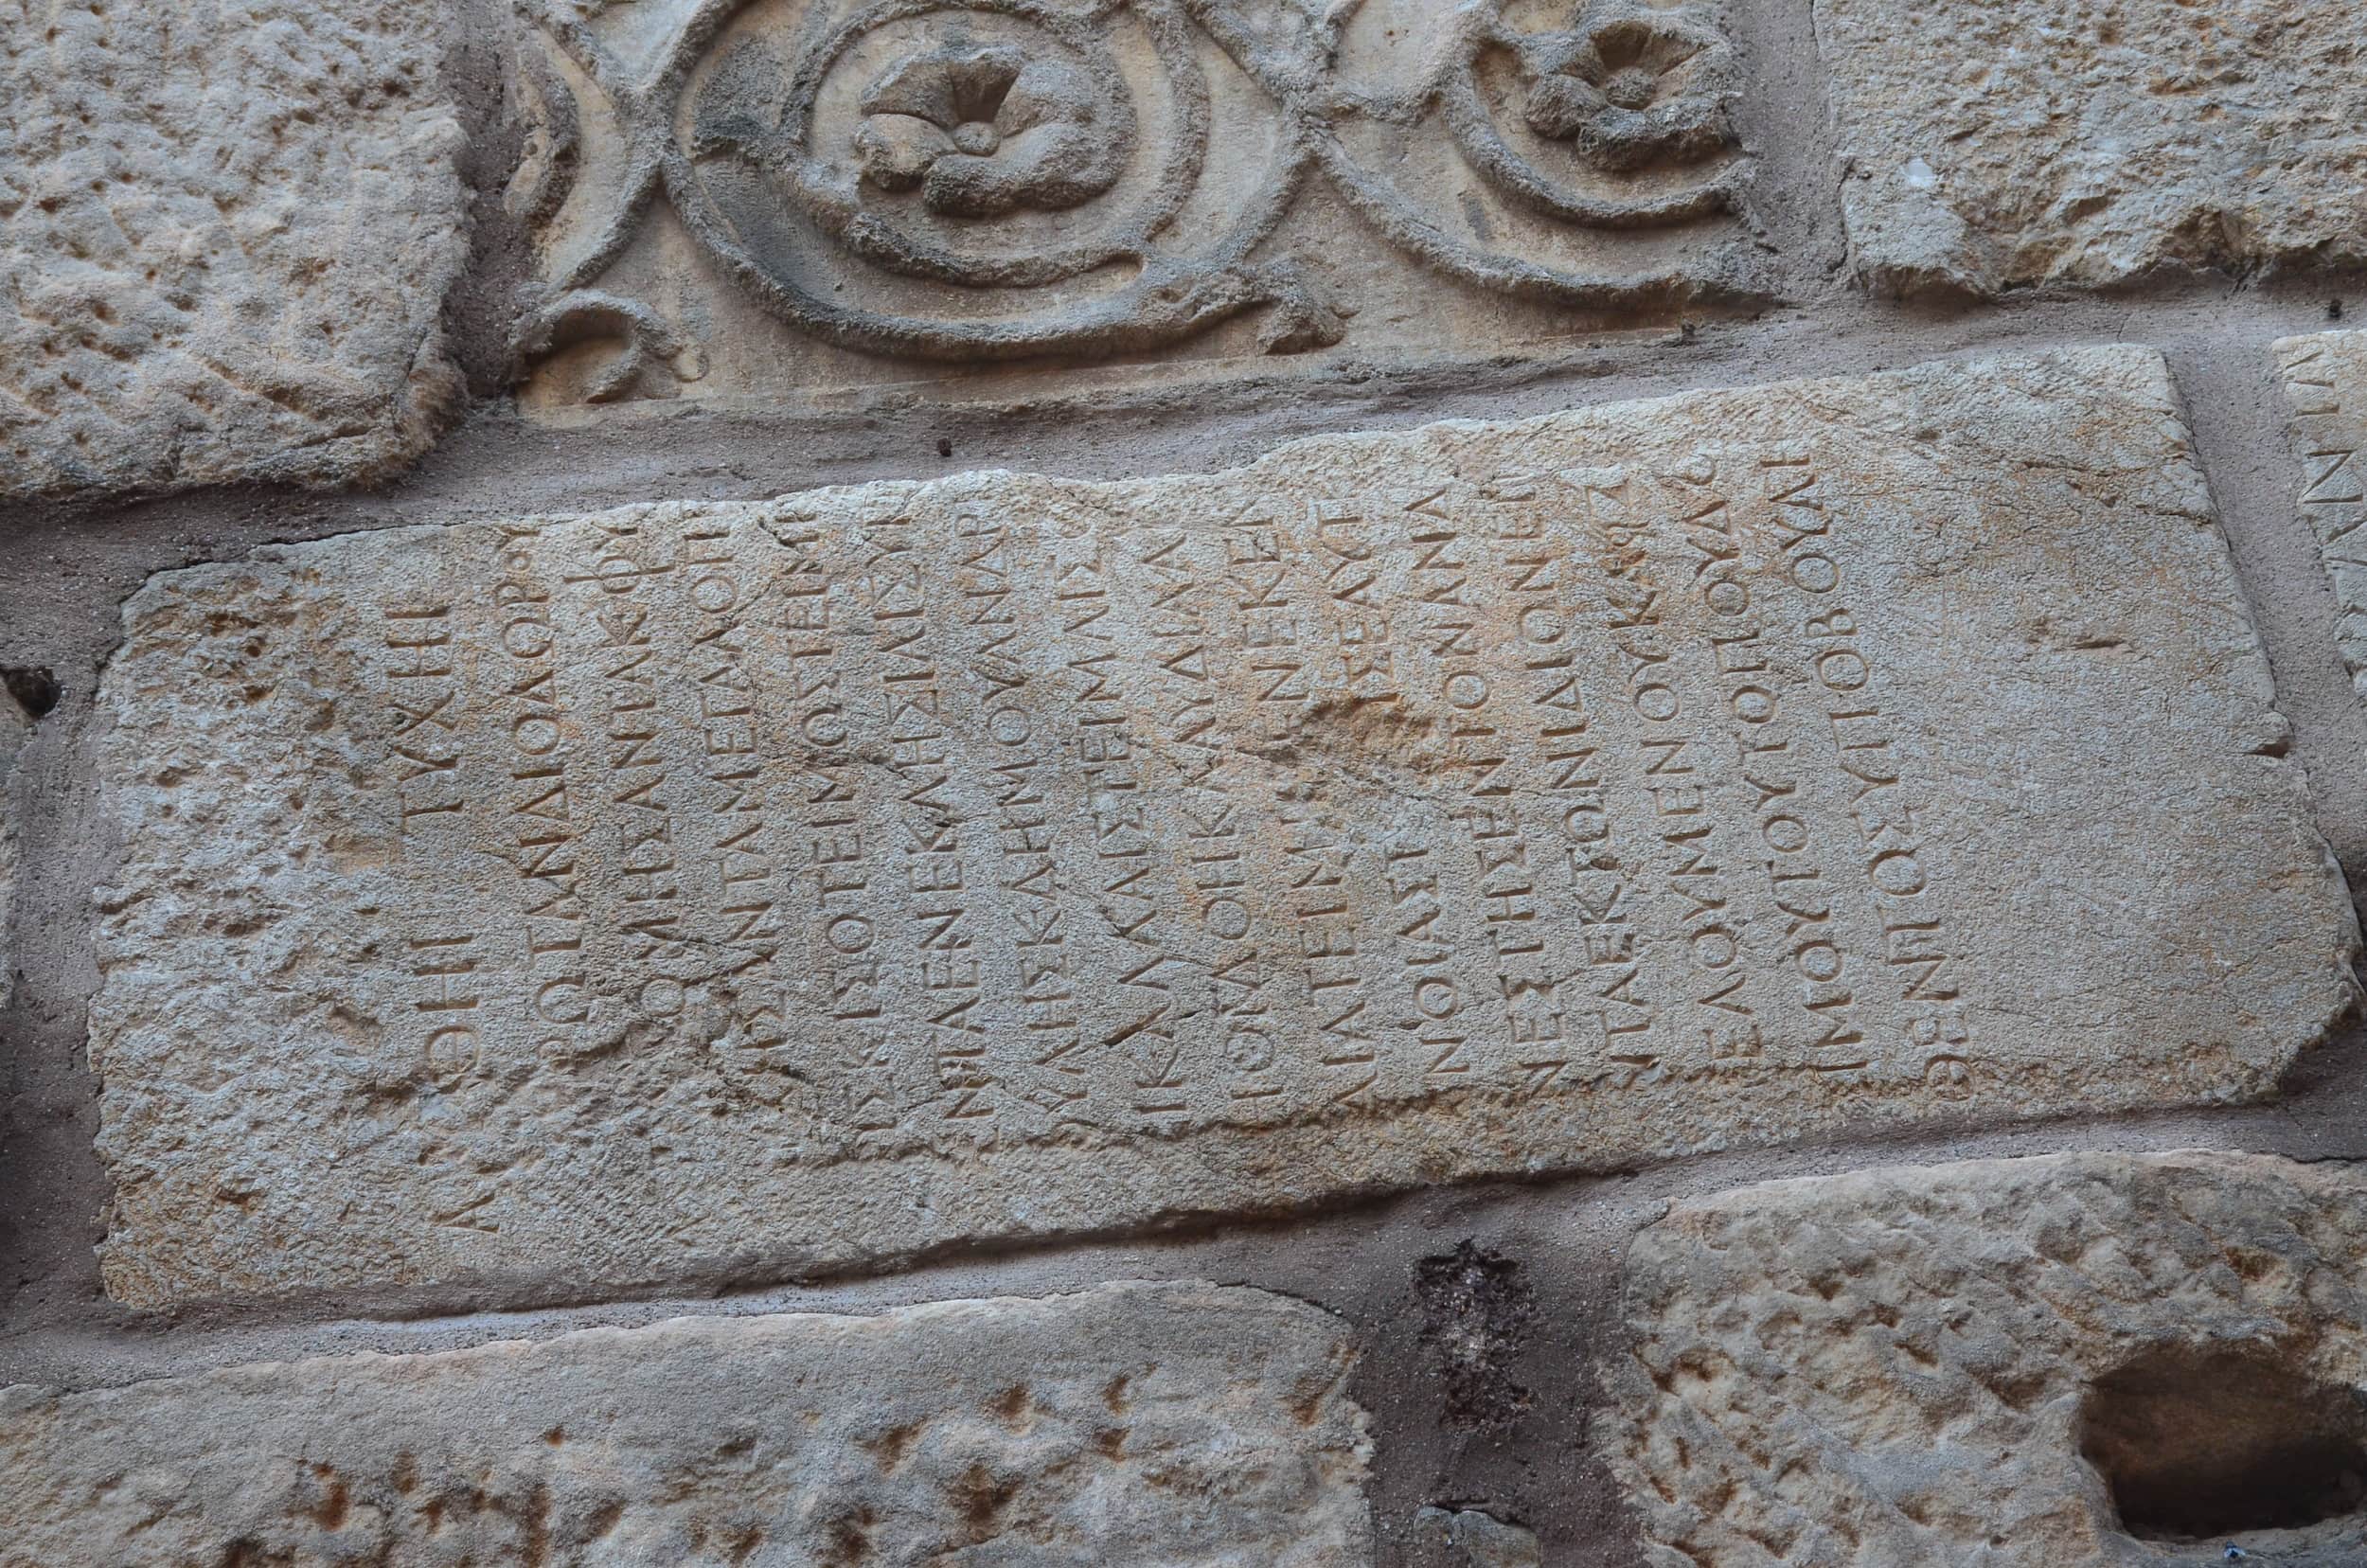 Greek inscription at Ankara Castle in Ankara, Turkey